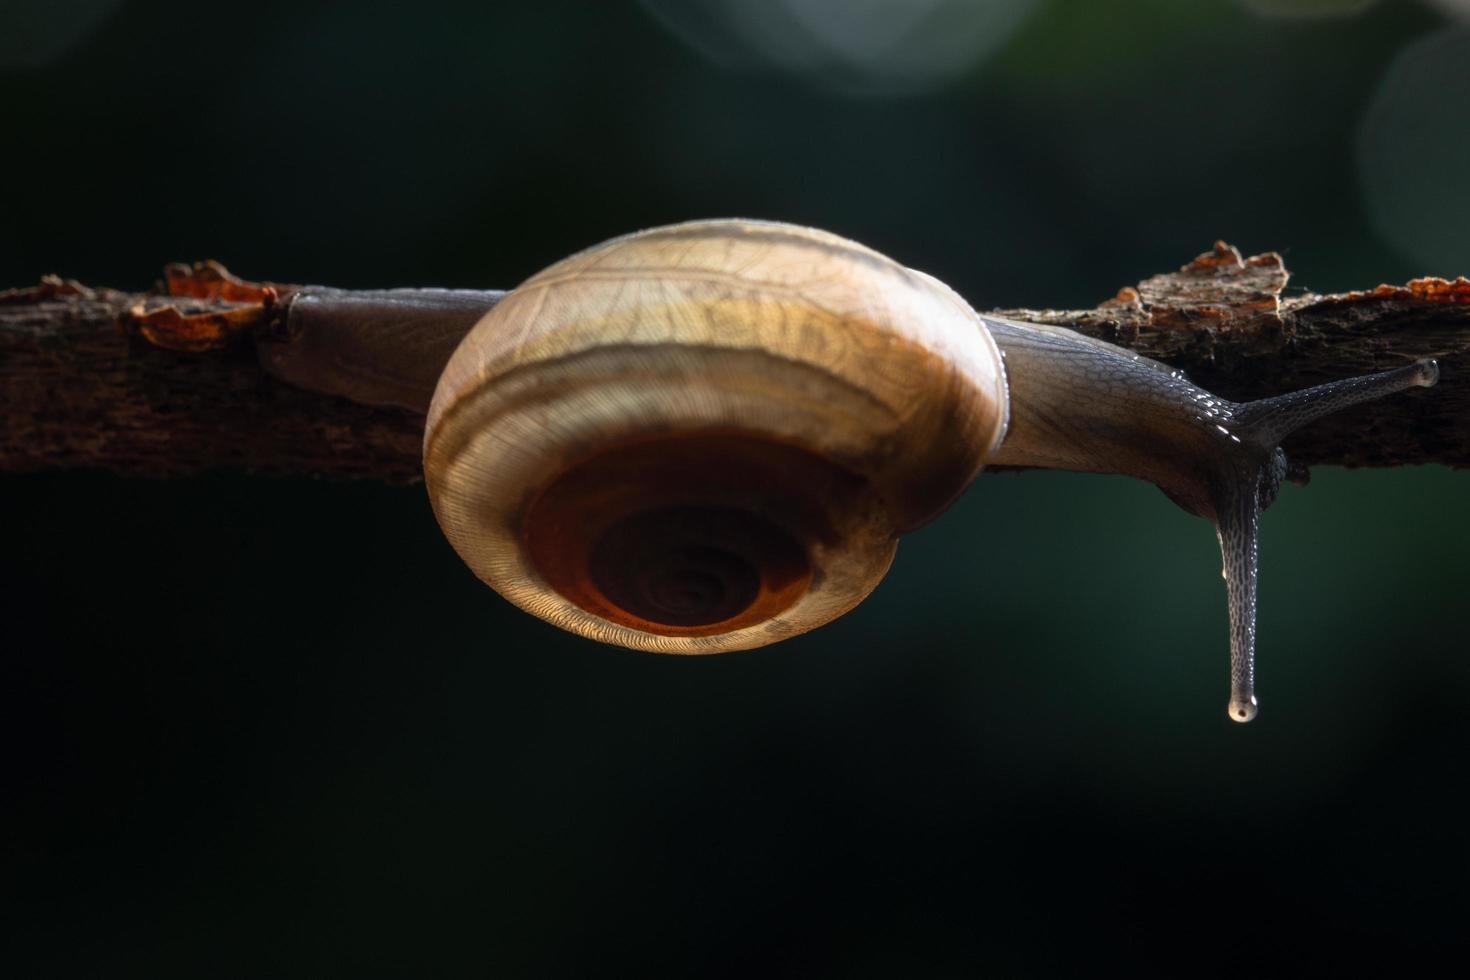 Snail on a branch photo